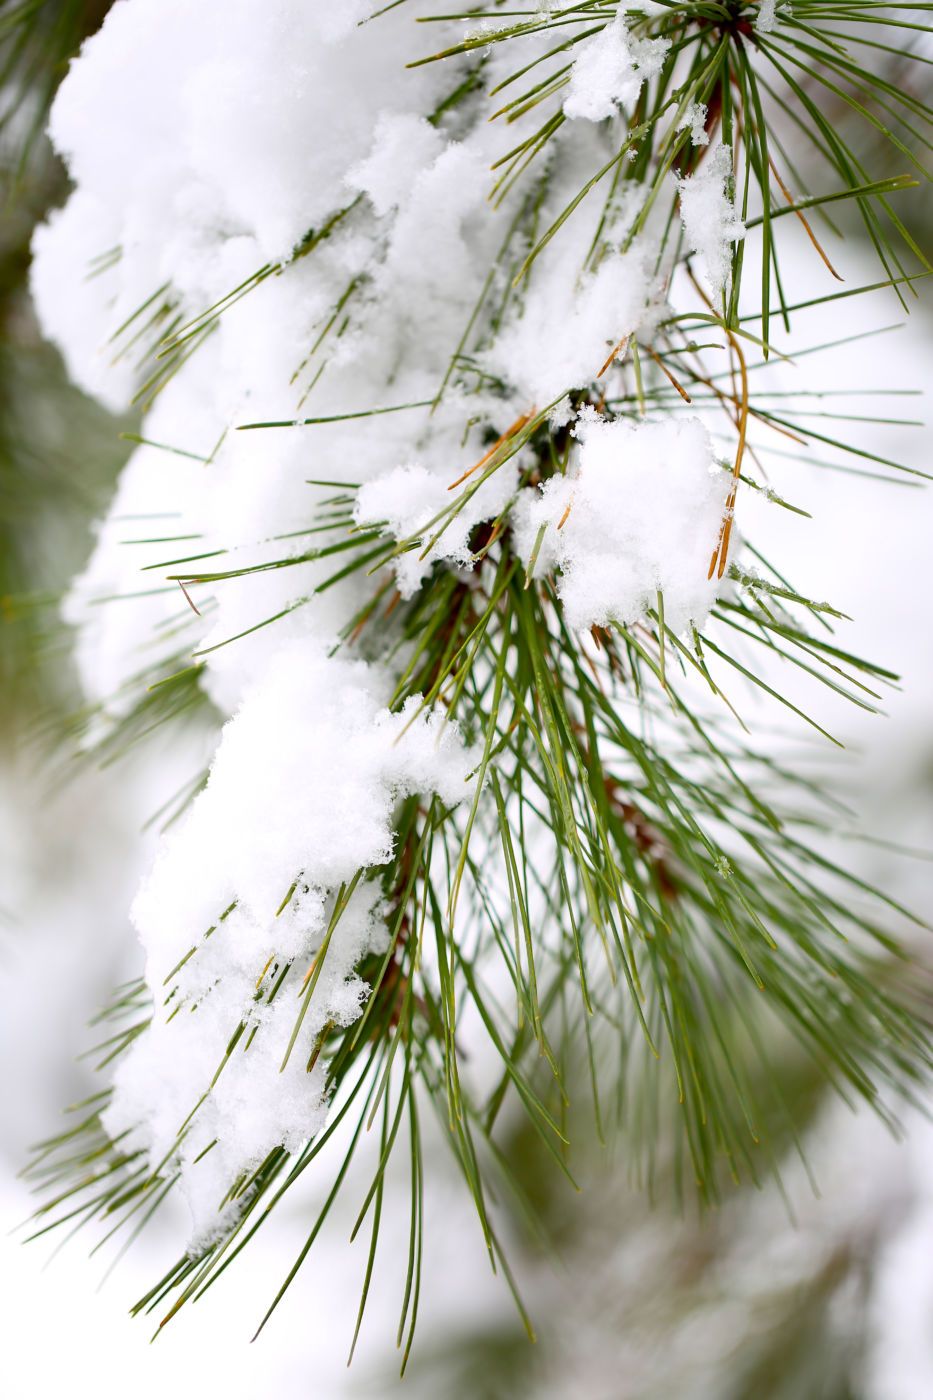 Snow-covered pine (Pinus sp.) needles